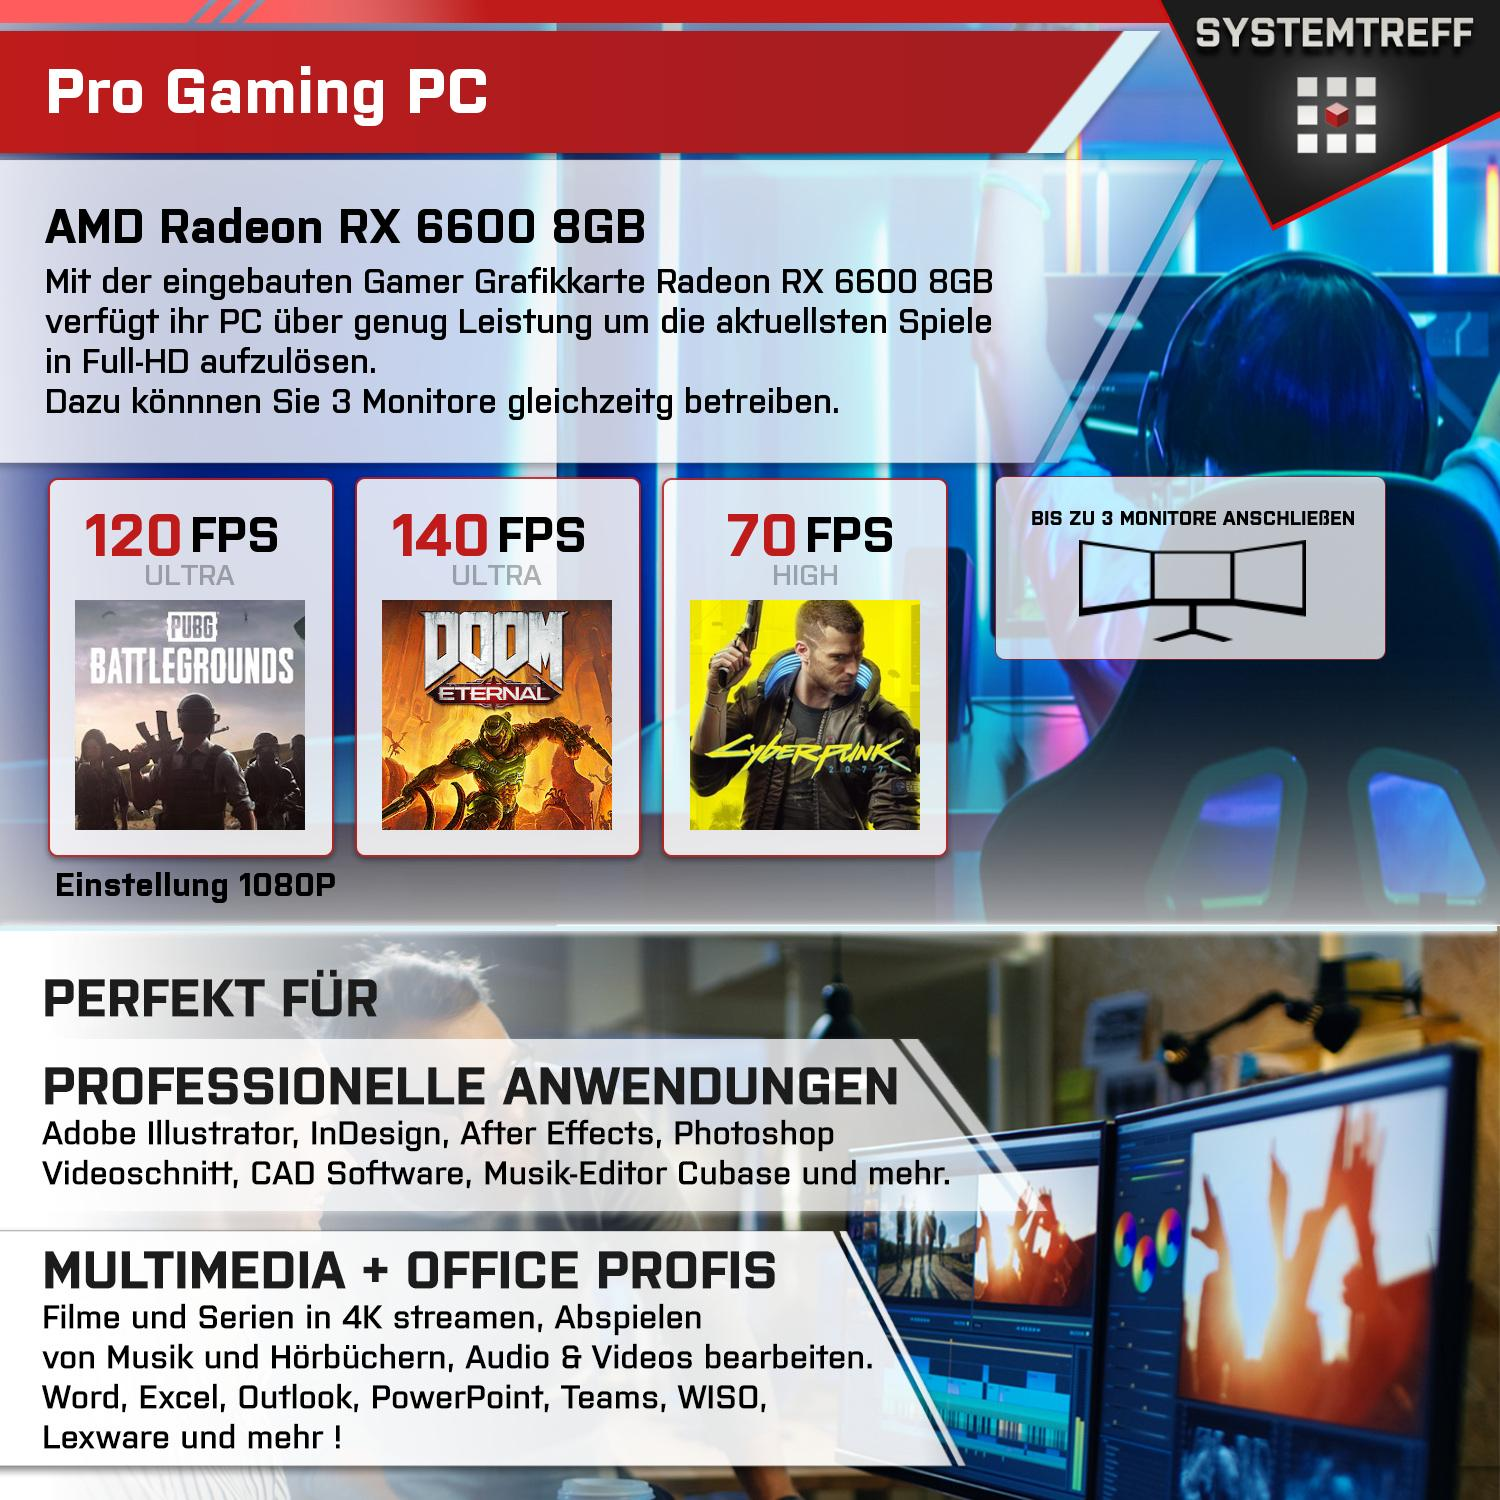 SYSTEMTREFF Gaming 5 AMD AMD GB 8 mSSD, 8GB PC 7600, Radeon 512 16 GDDR6, Ryzen 6600 GB Komplett RX mit 7600 RAM, Komplett Prozessor, GB